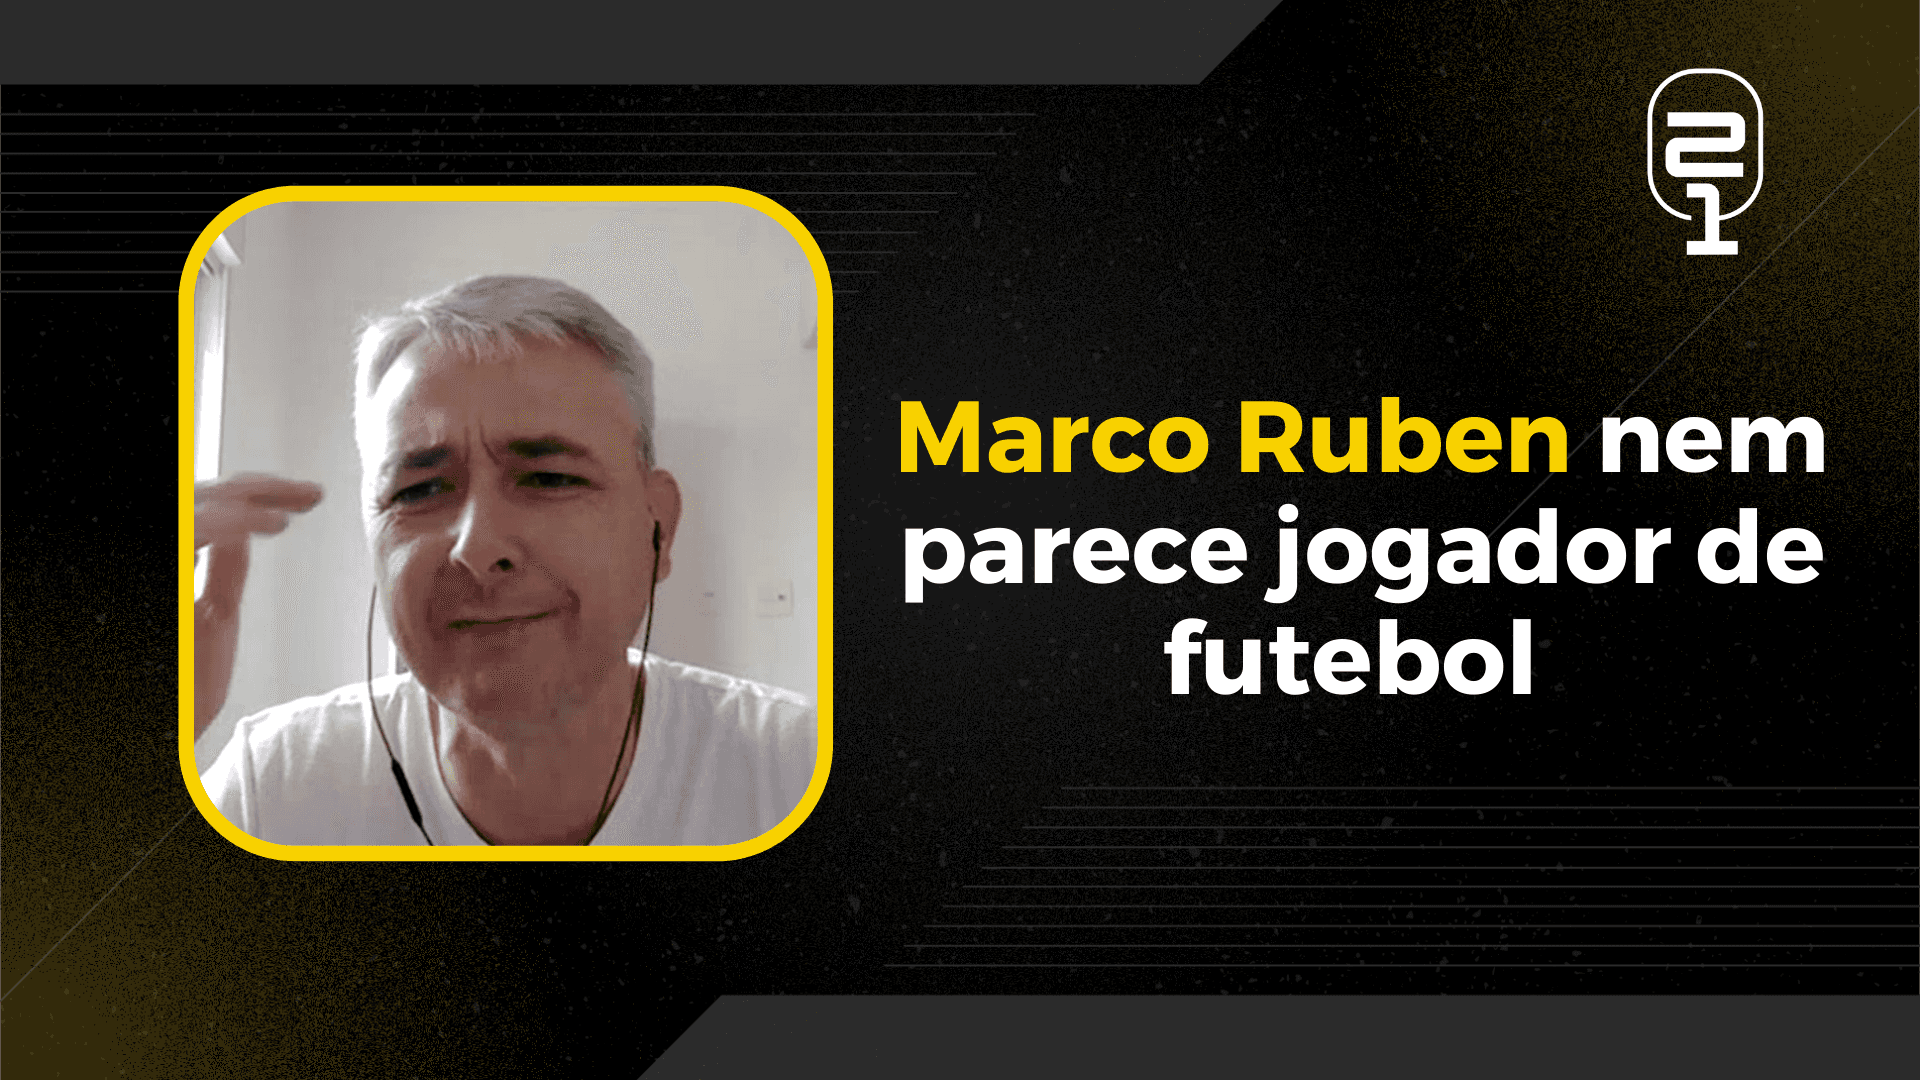 Nunes revela pressão e esforço financeiro por Marco Ruben: “Tinha tudo para não acertar”